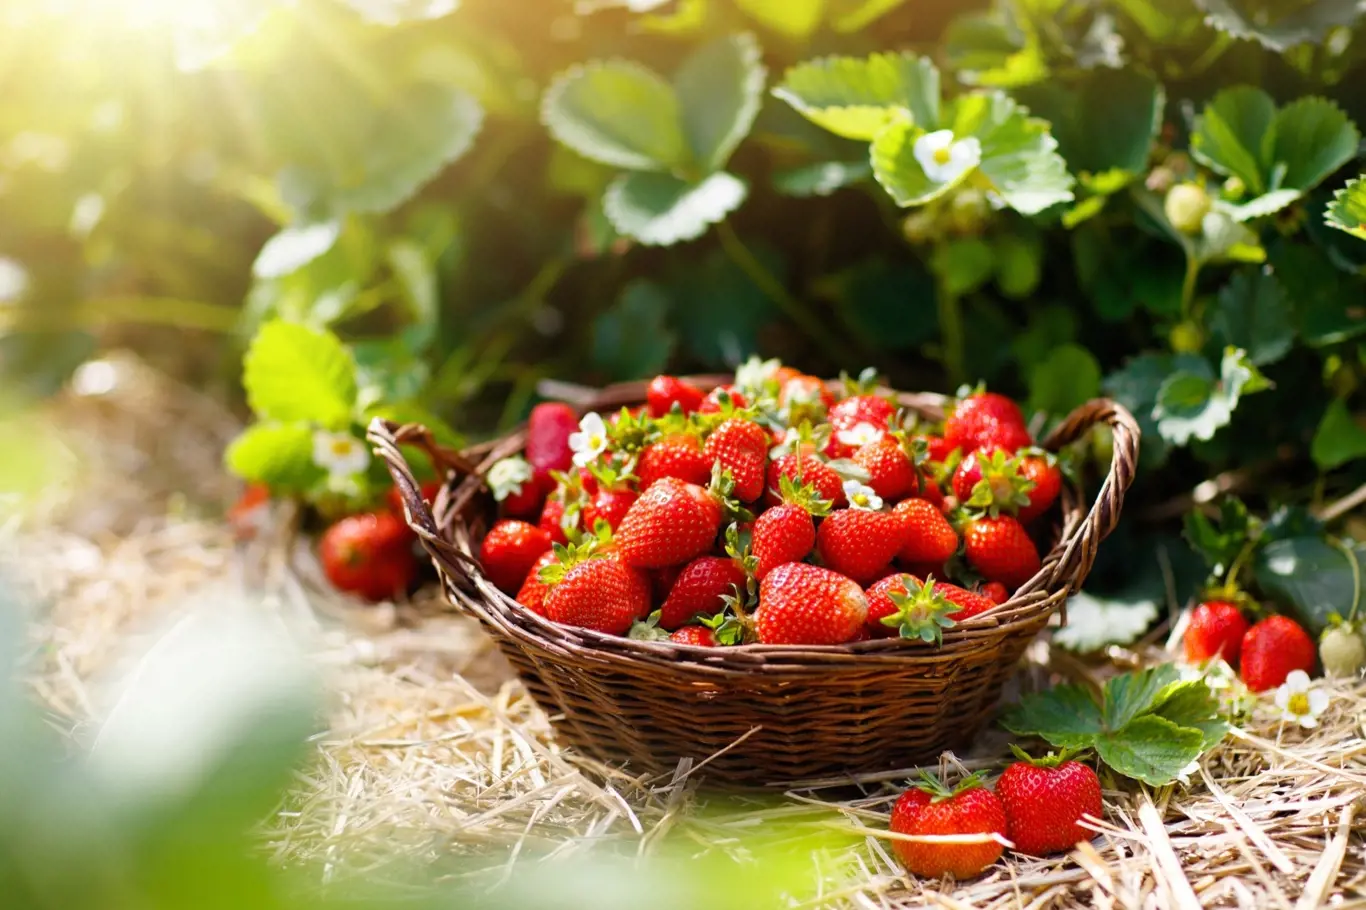 Pochutnáváte si rádi na jahodách a chcete si jich opravdu užít? Aby se vám jahodníky, které pěstujete na zahradě, odvděčily bohatou úrodou, je na čase je přihnojit.